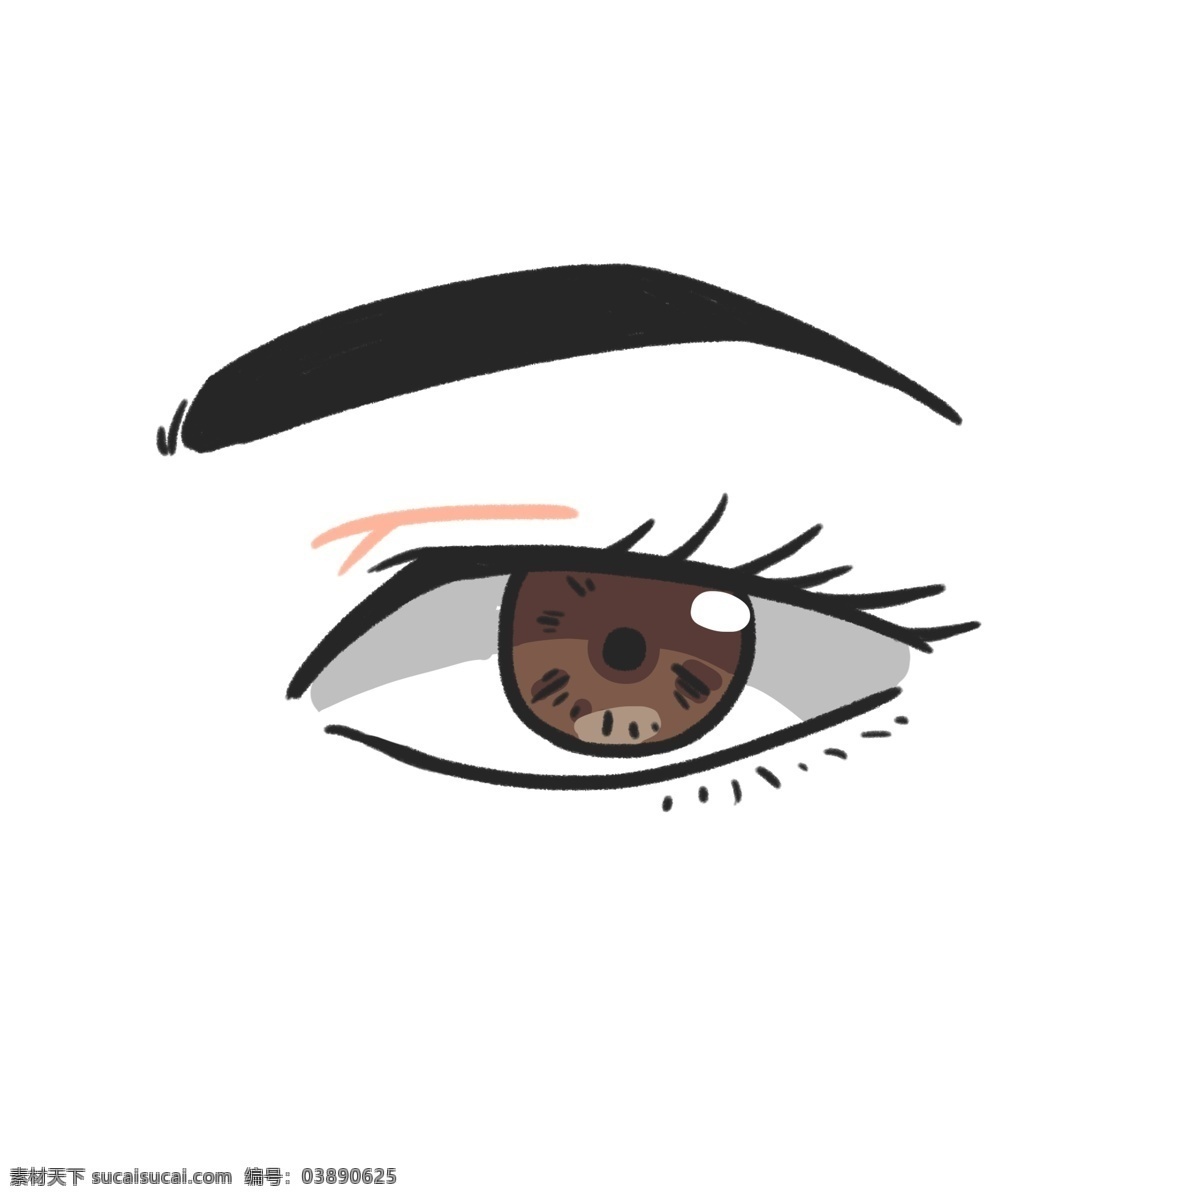 人体 器官 眼睛 插画 黑色的眼睛 黑色眉毛 人体器官 健康的眼睛 睫毛 眼球 眼珠 眼白 卡通眼睛插画